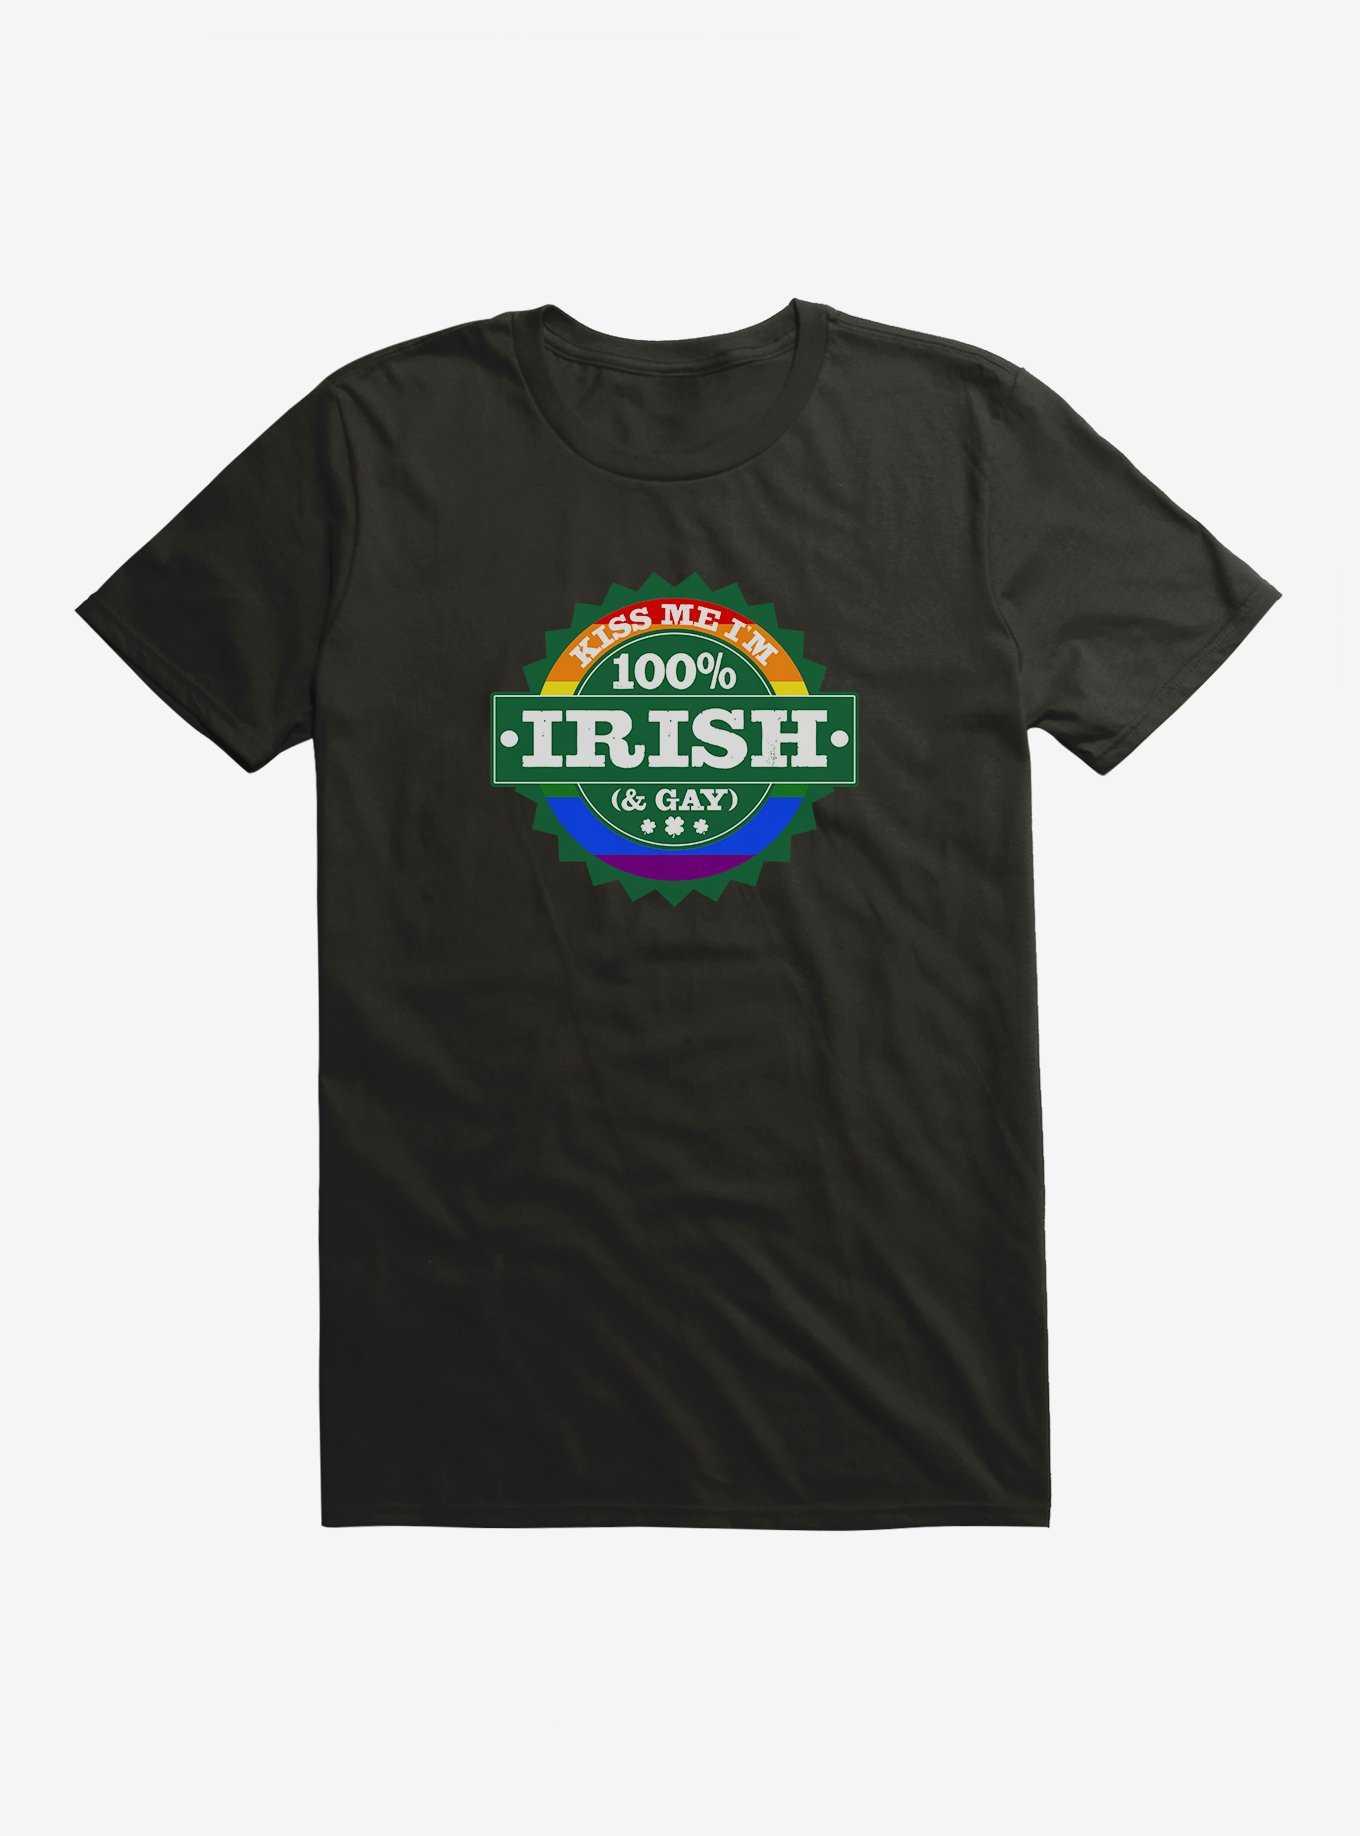 100% Irish And Gay! T-Shirt, , hi-res